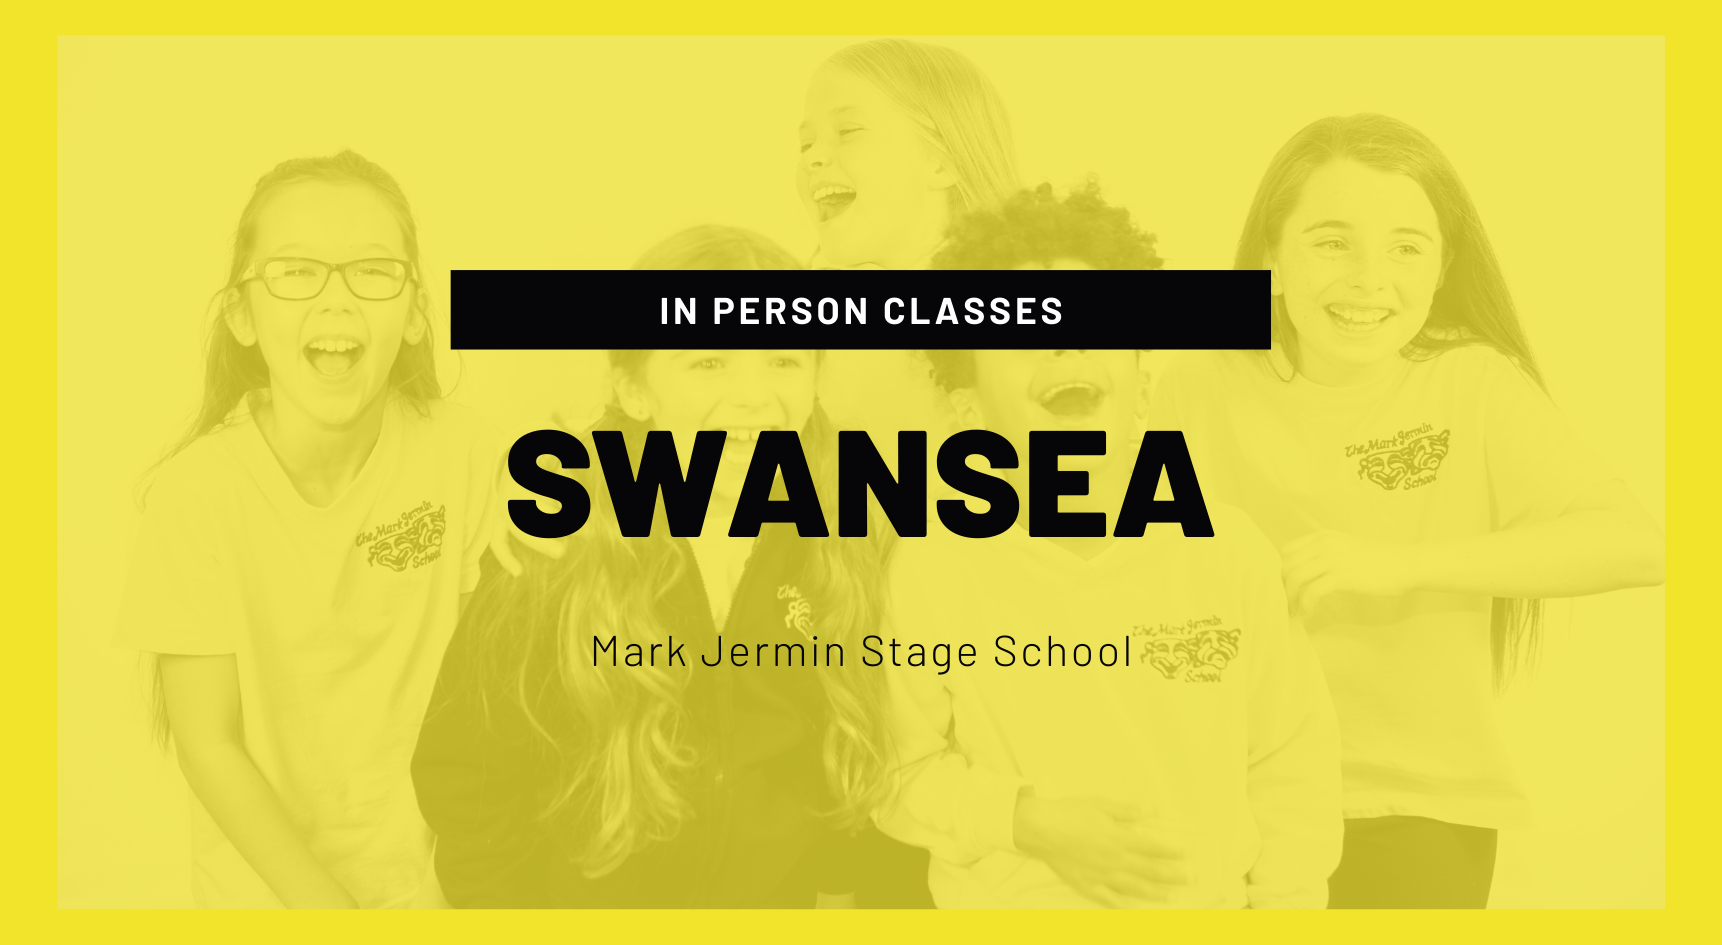 Mark Jermin Stage School: Swansea